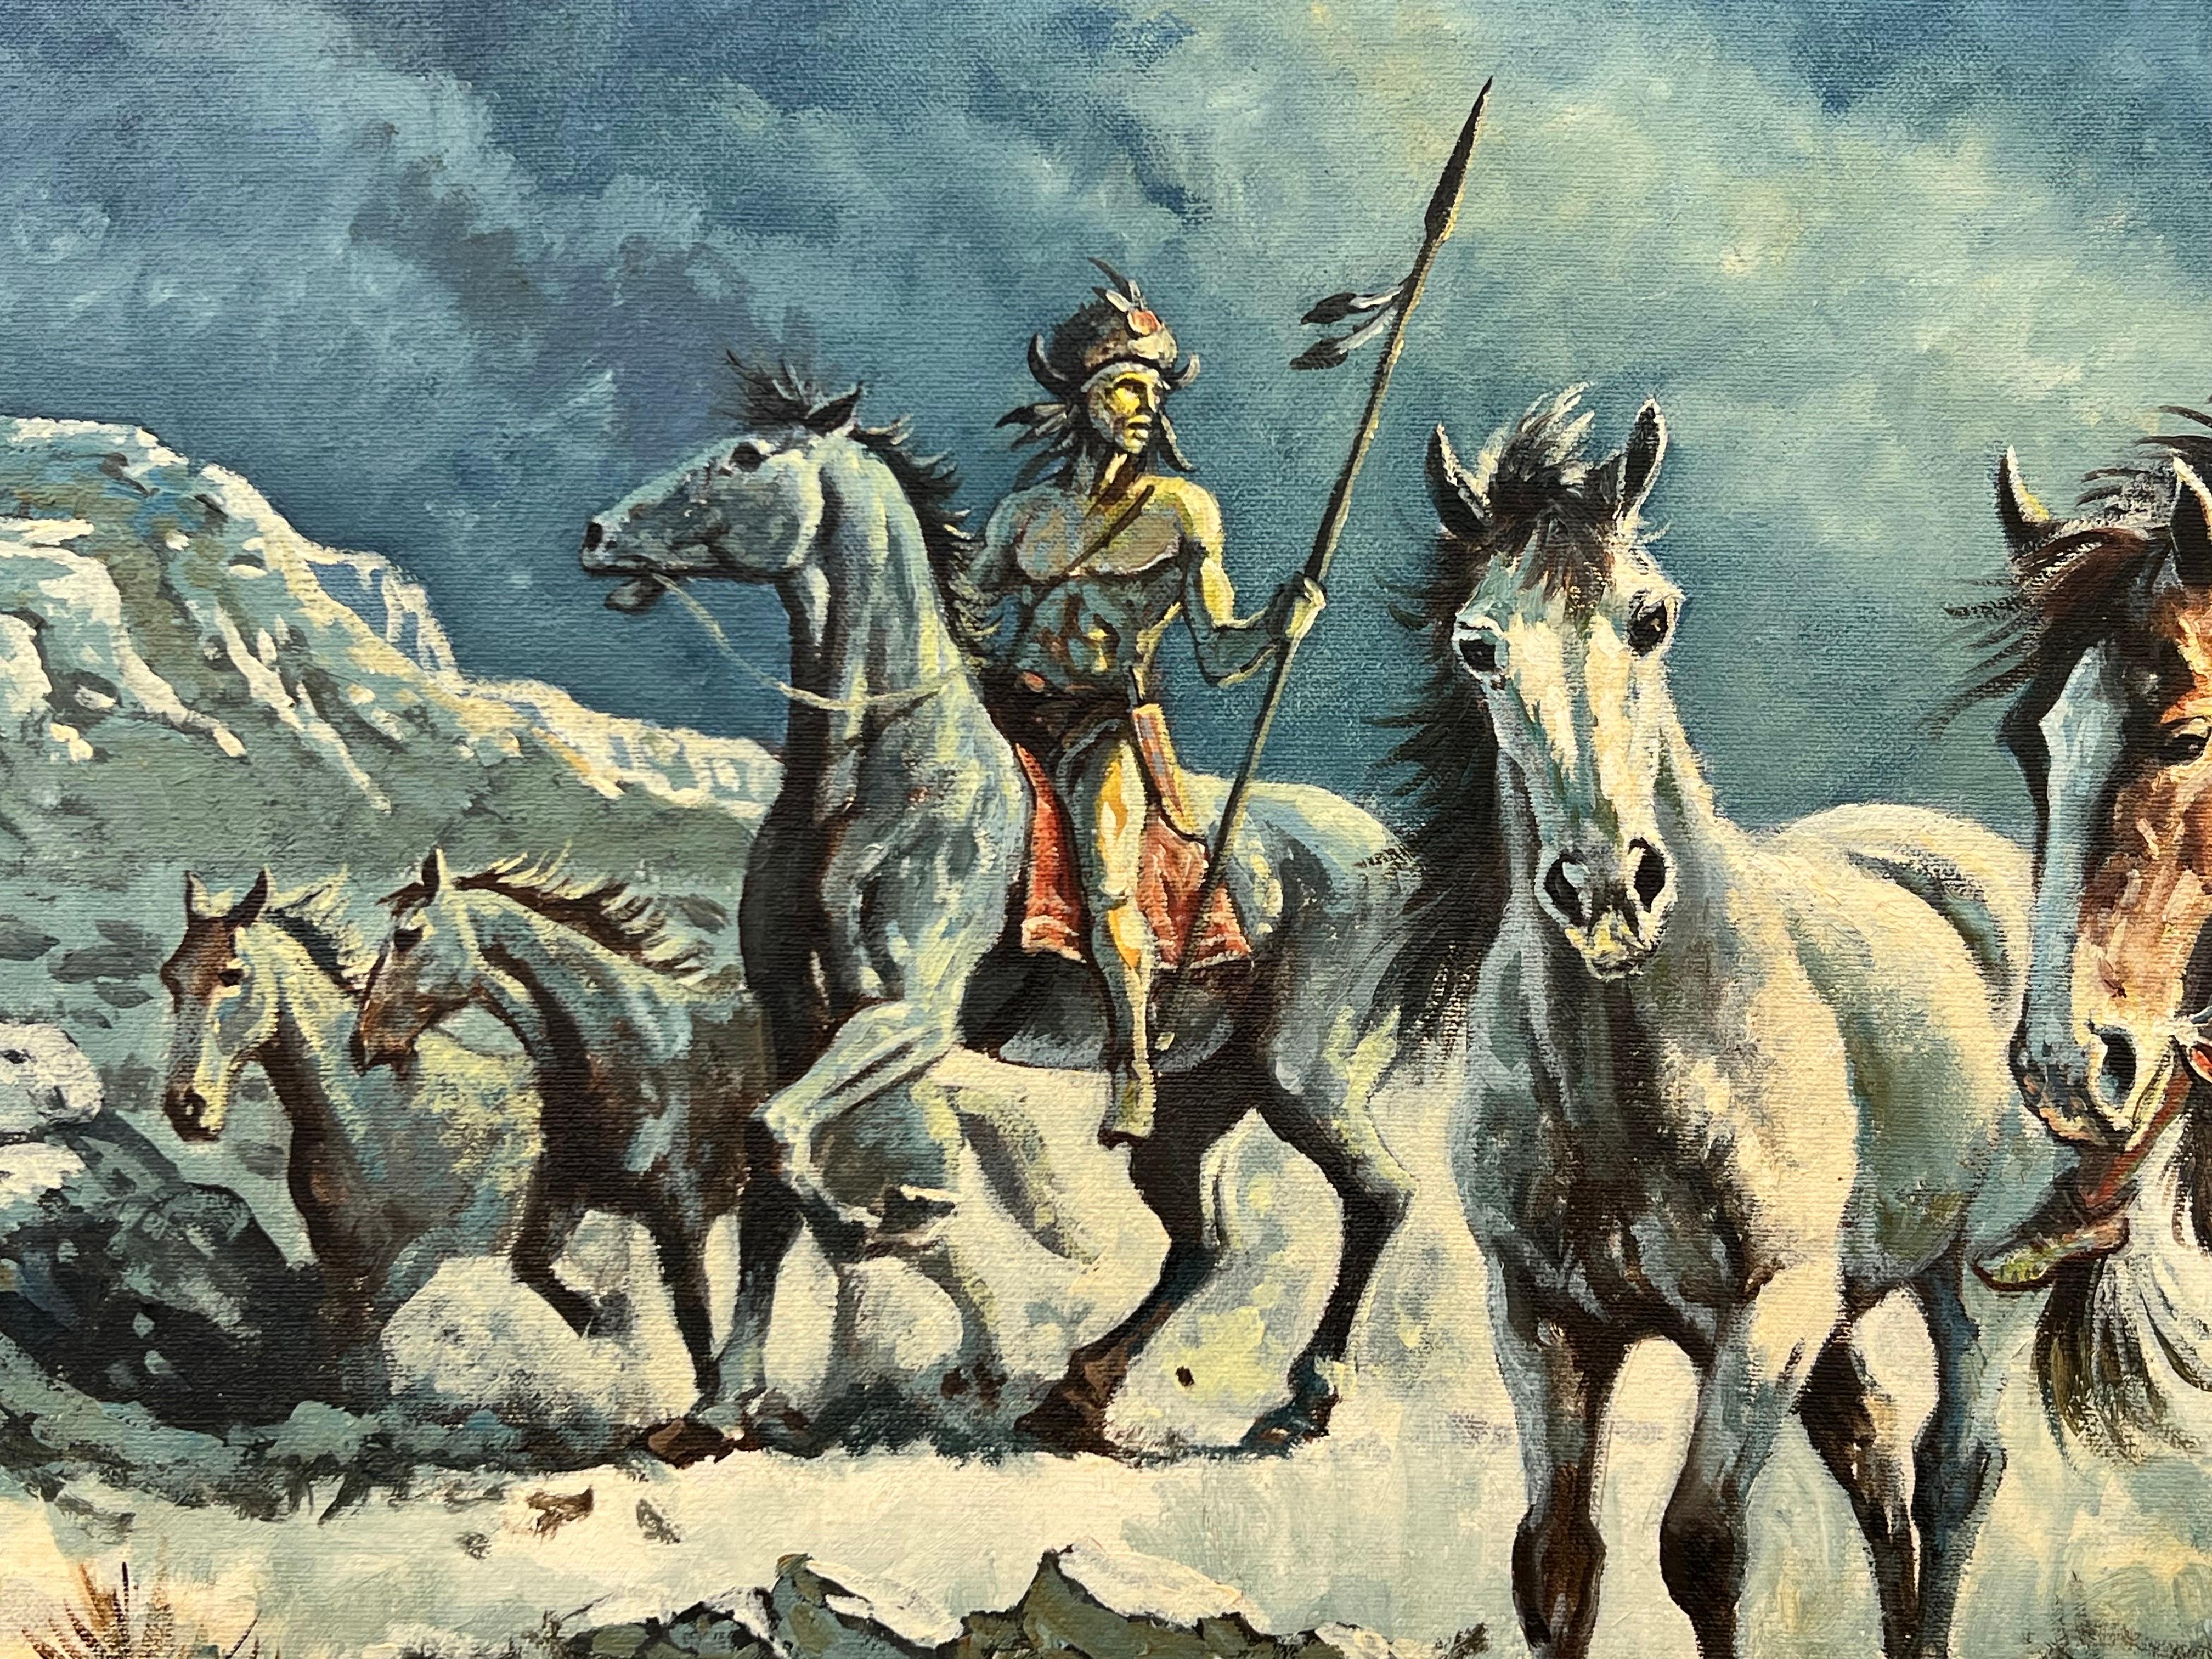 Warriors amérindiens à cheval sur un paysage dramatique en pleine lune - Painting de Alan Langford